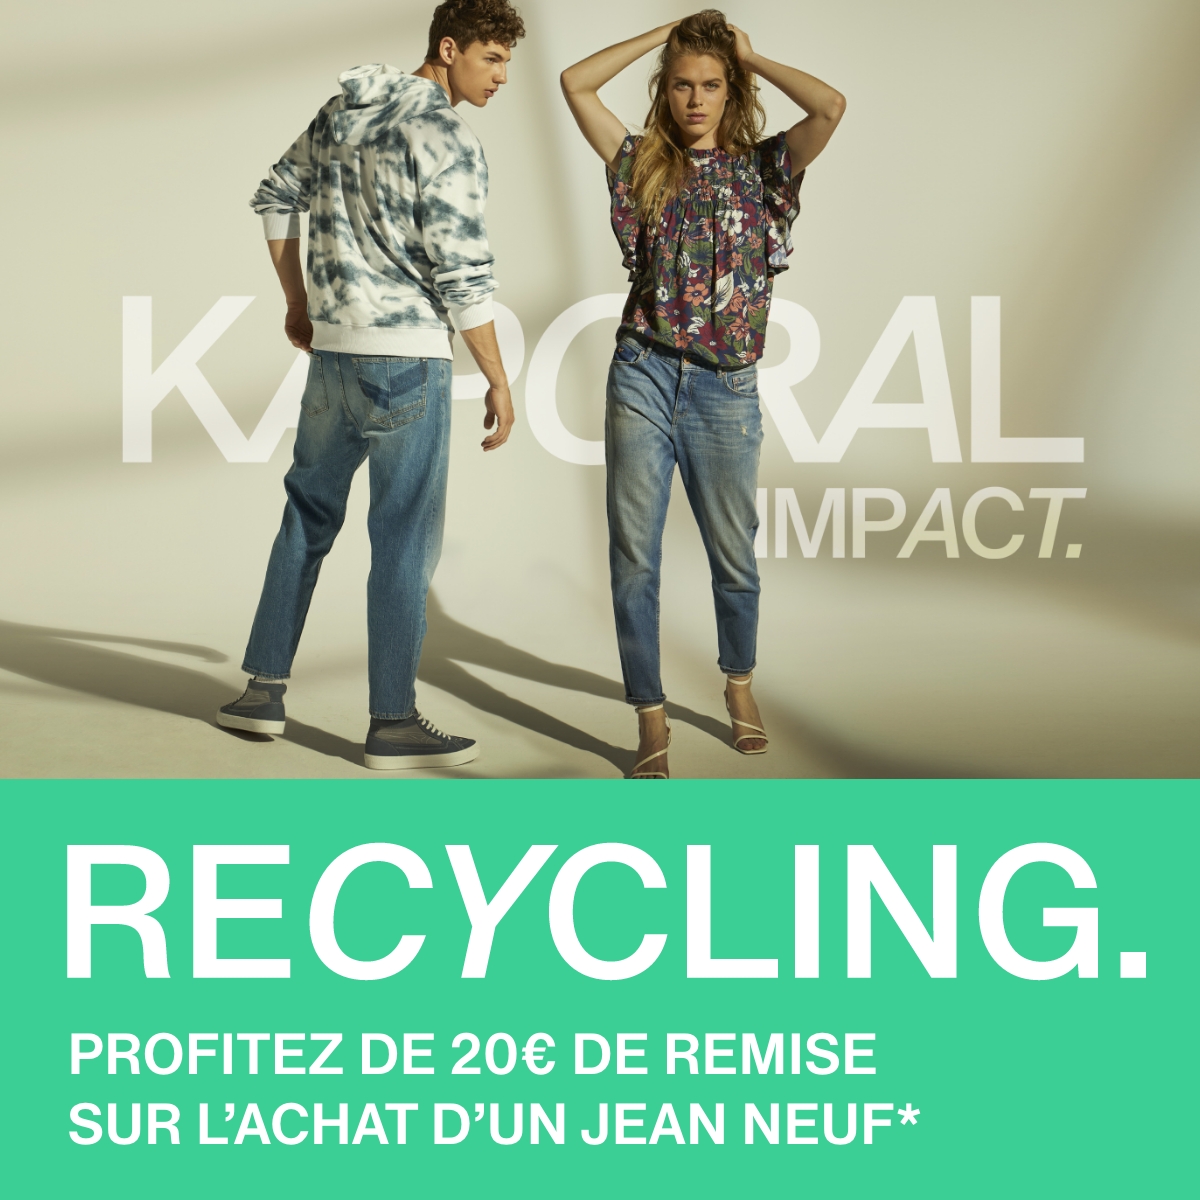 Kaporal, Opération Recycling